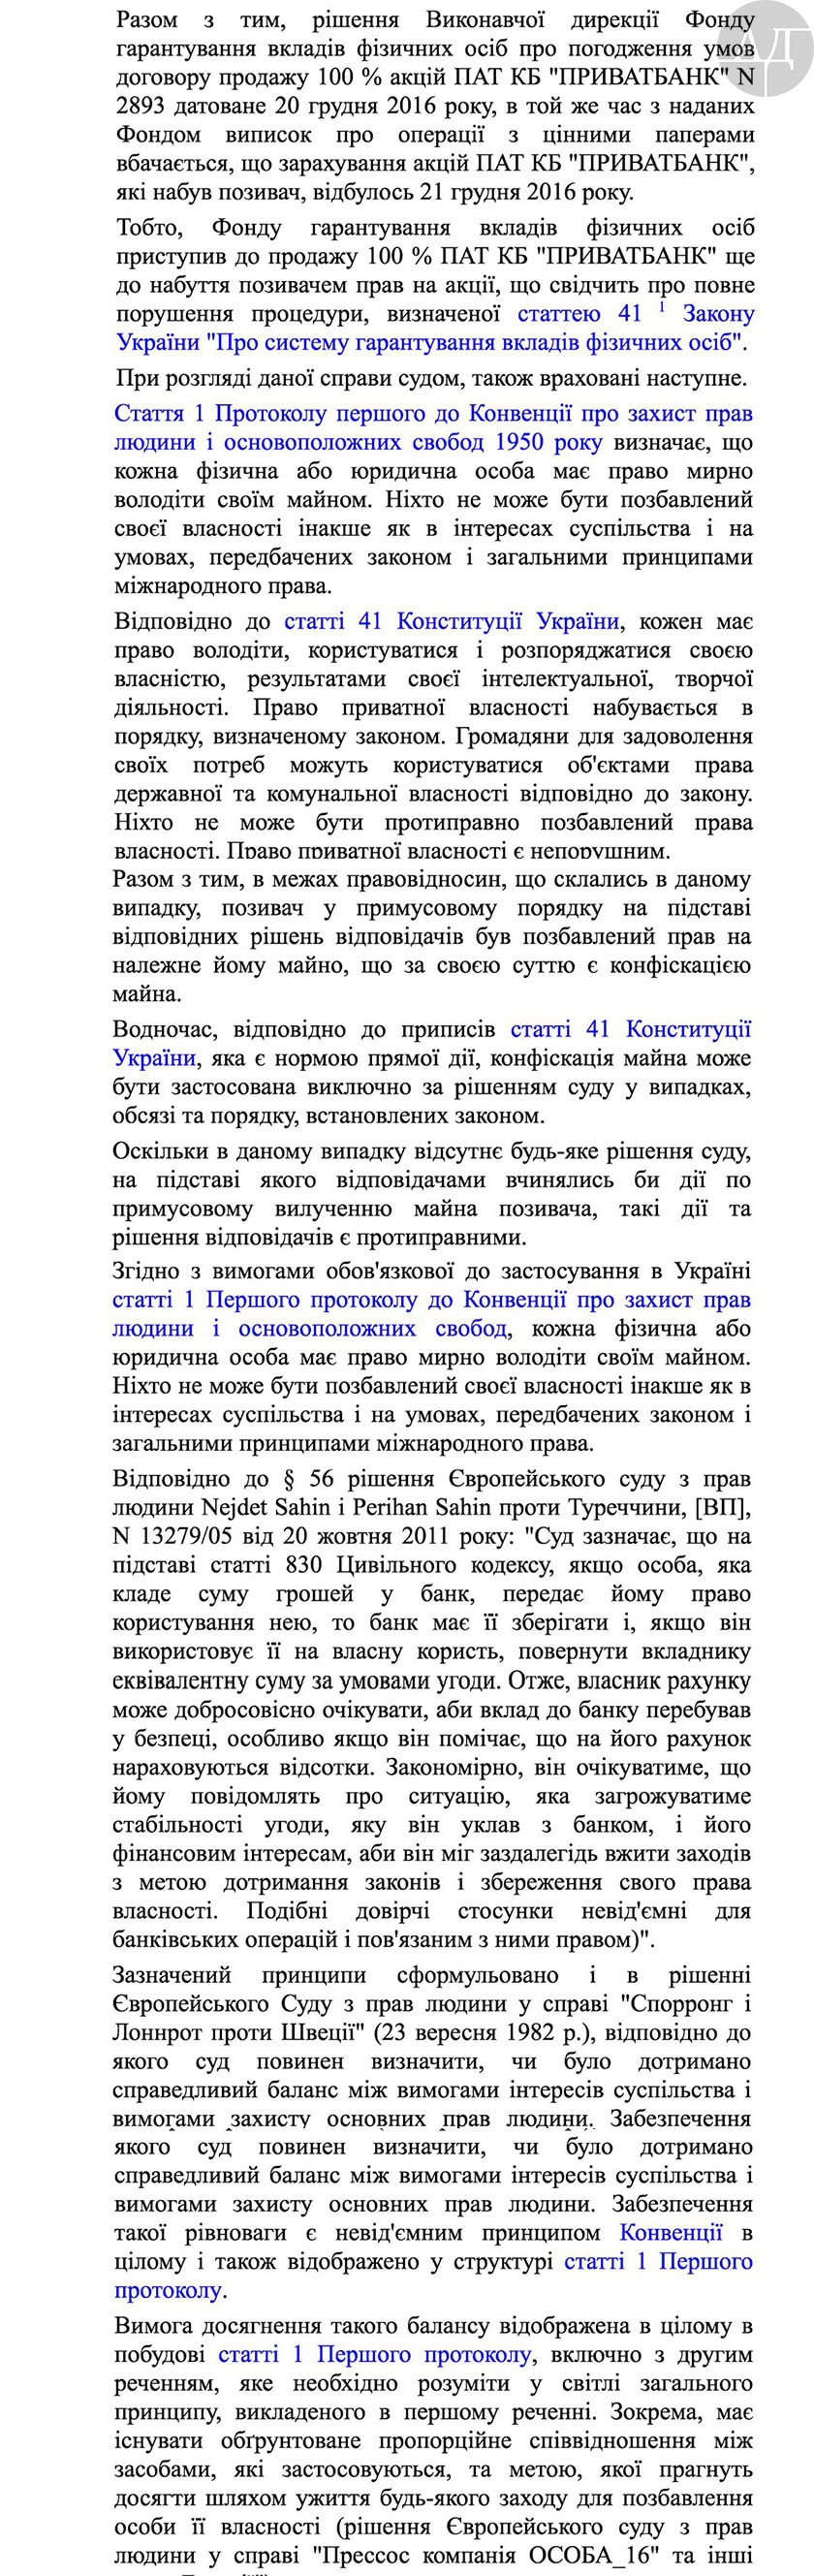 мы публикуем ключевые части решения, которым Гонтарева и Ворушилин признаются клиническими идиотами-экспроприаторами :)